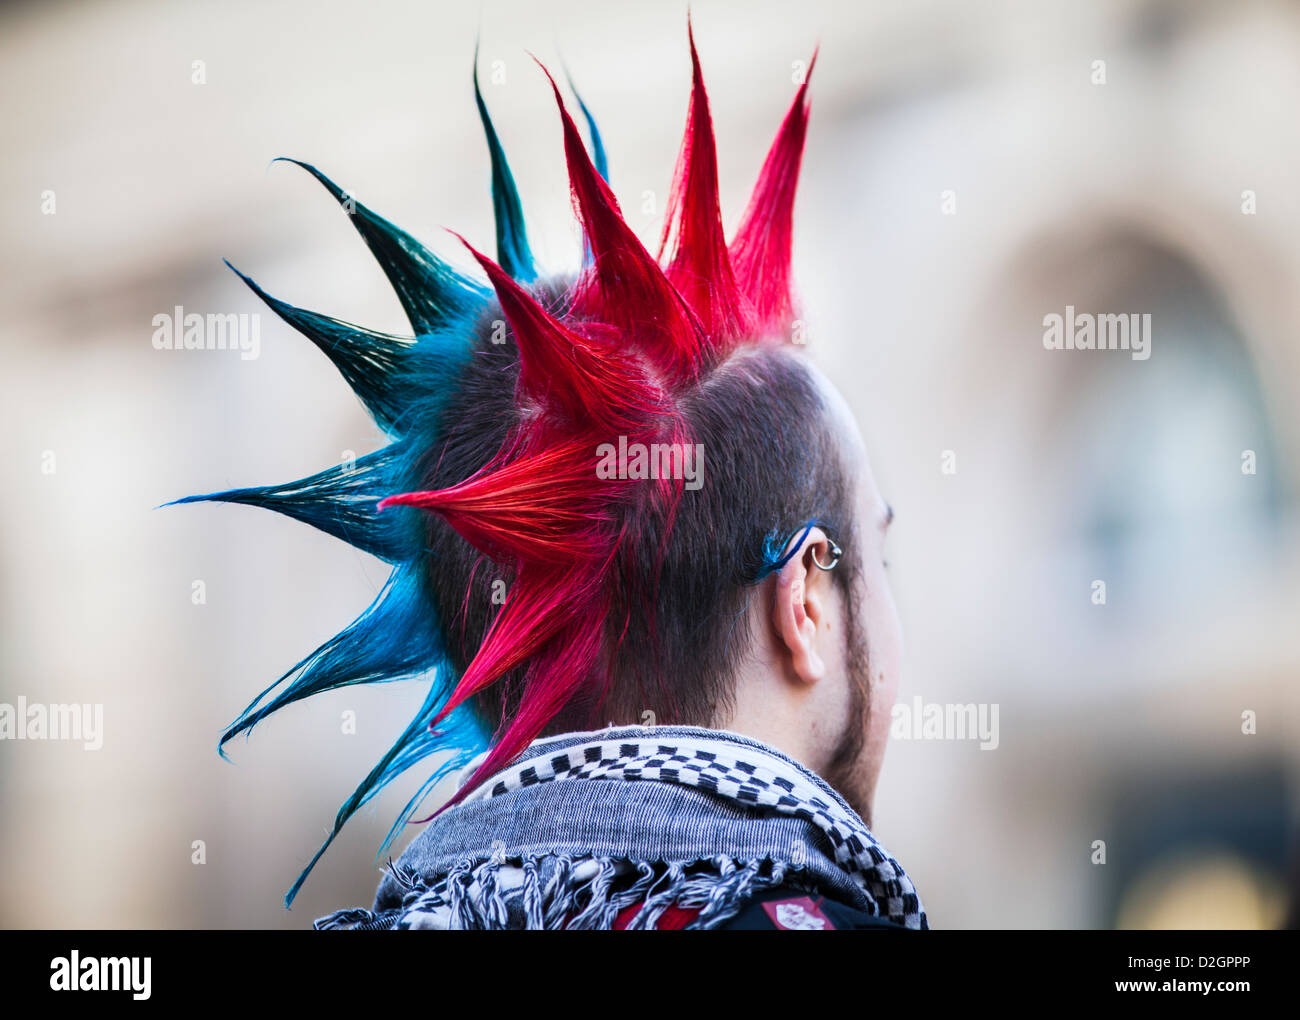 Ein Punk-Rocker mit einem bunten Irokesenschnitt Haar geschnitten in Birmingham, UK Stockfoto